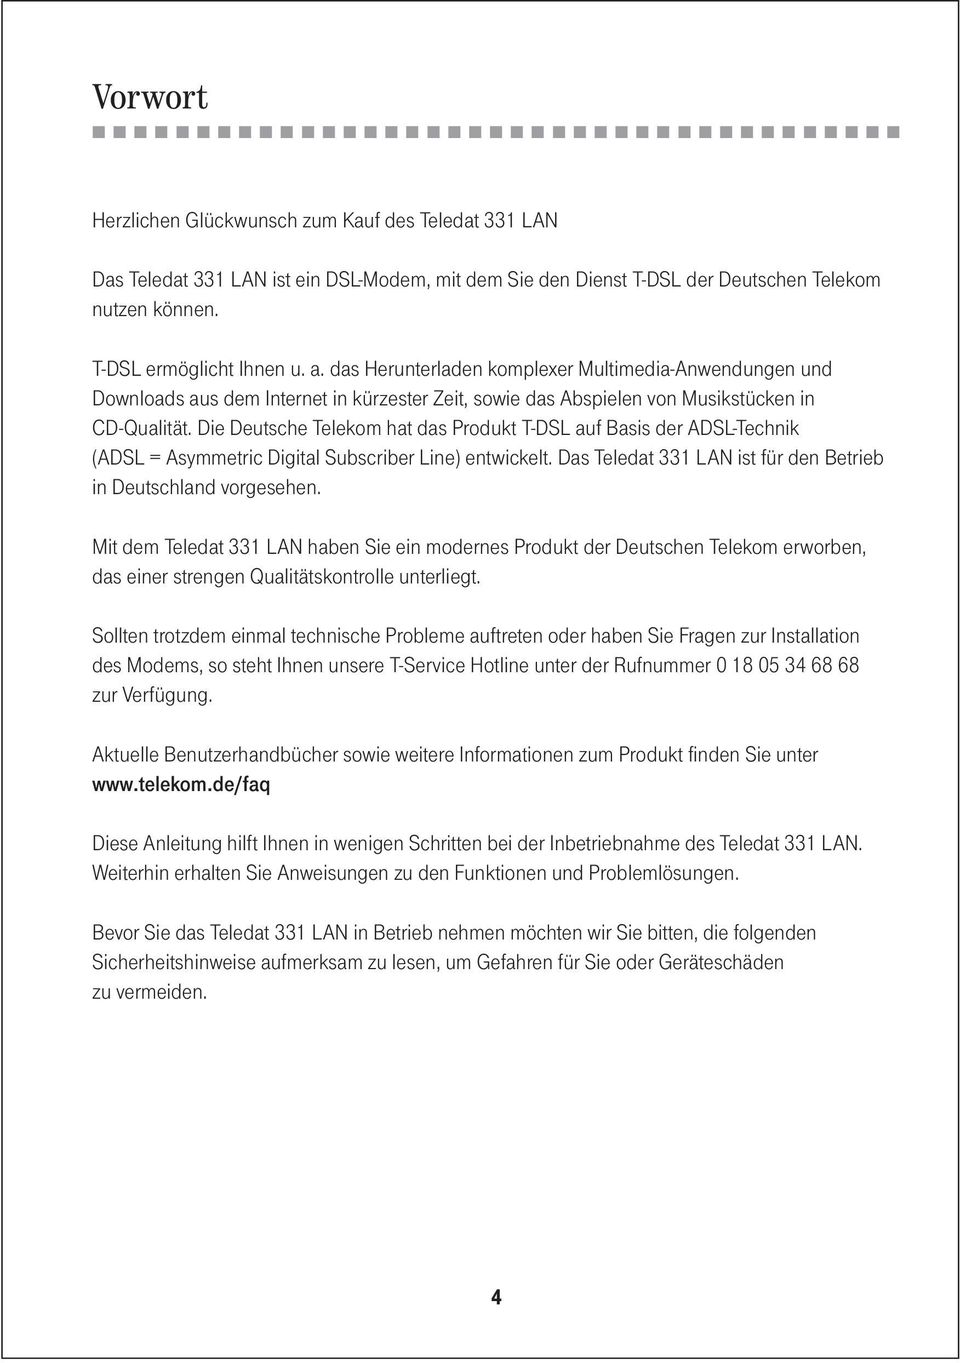 Die Deutsche Telekom hat das Produkt T-DSL auf Basis der ADSL-Technik (ADSL = Asymmetric Digital Subscriber Line) entwickelt. Das Teledat 331 LAN ist für den Betrieb in Deutschland vorgesehen.